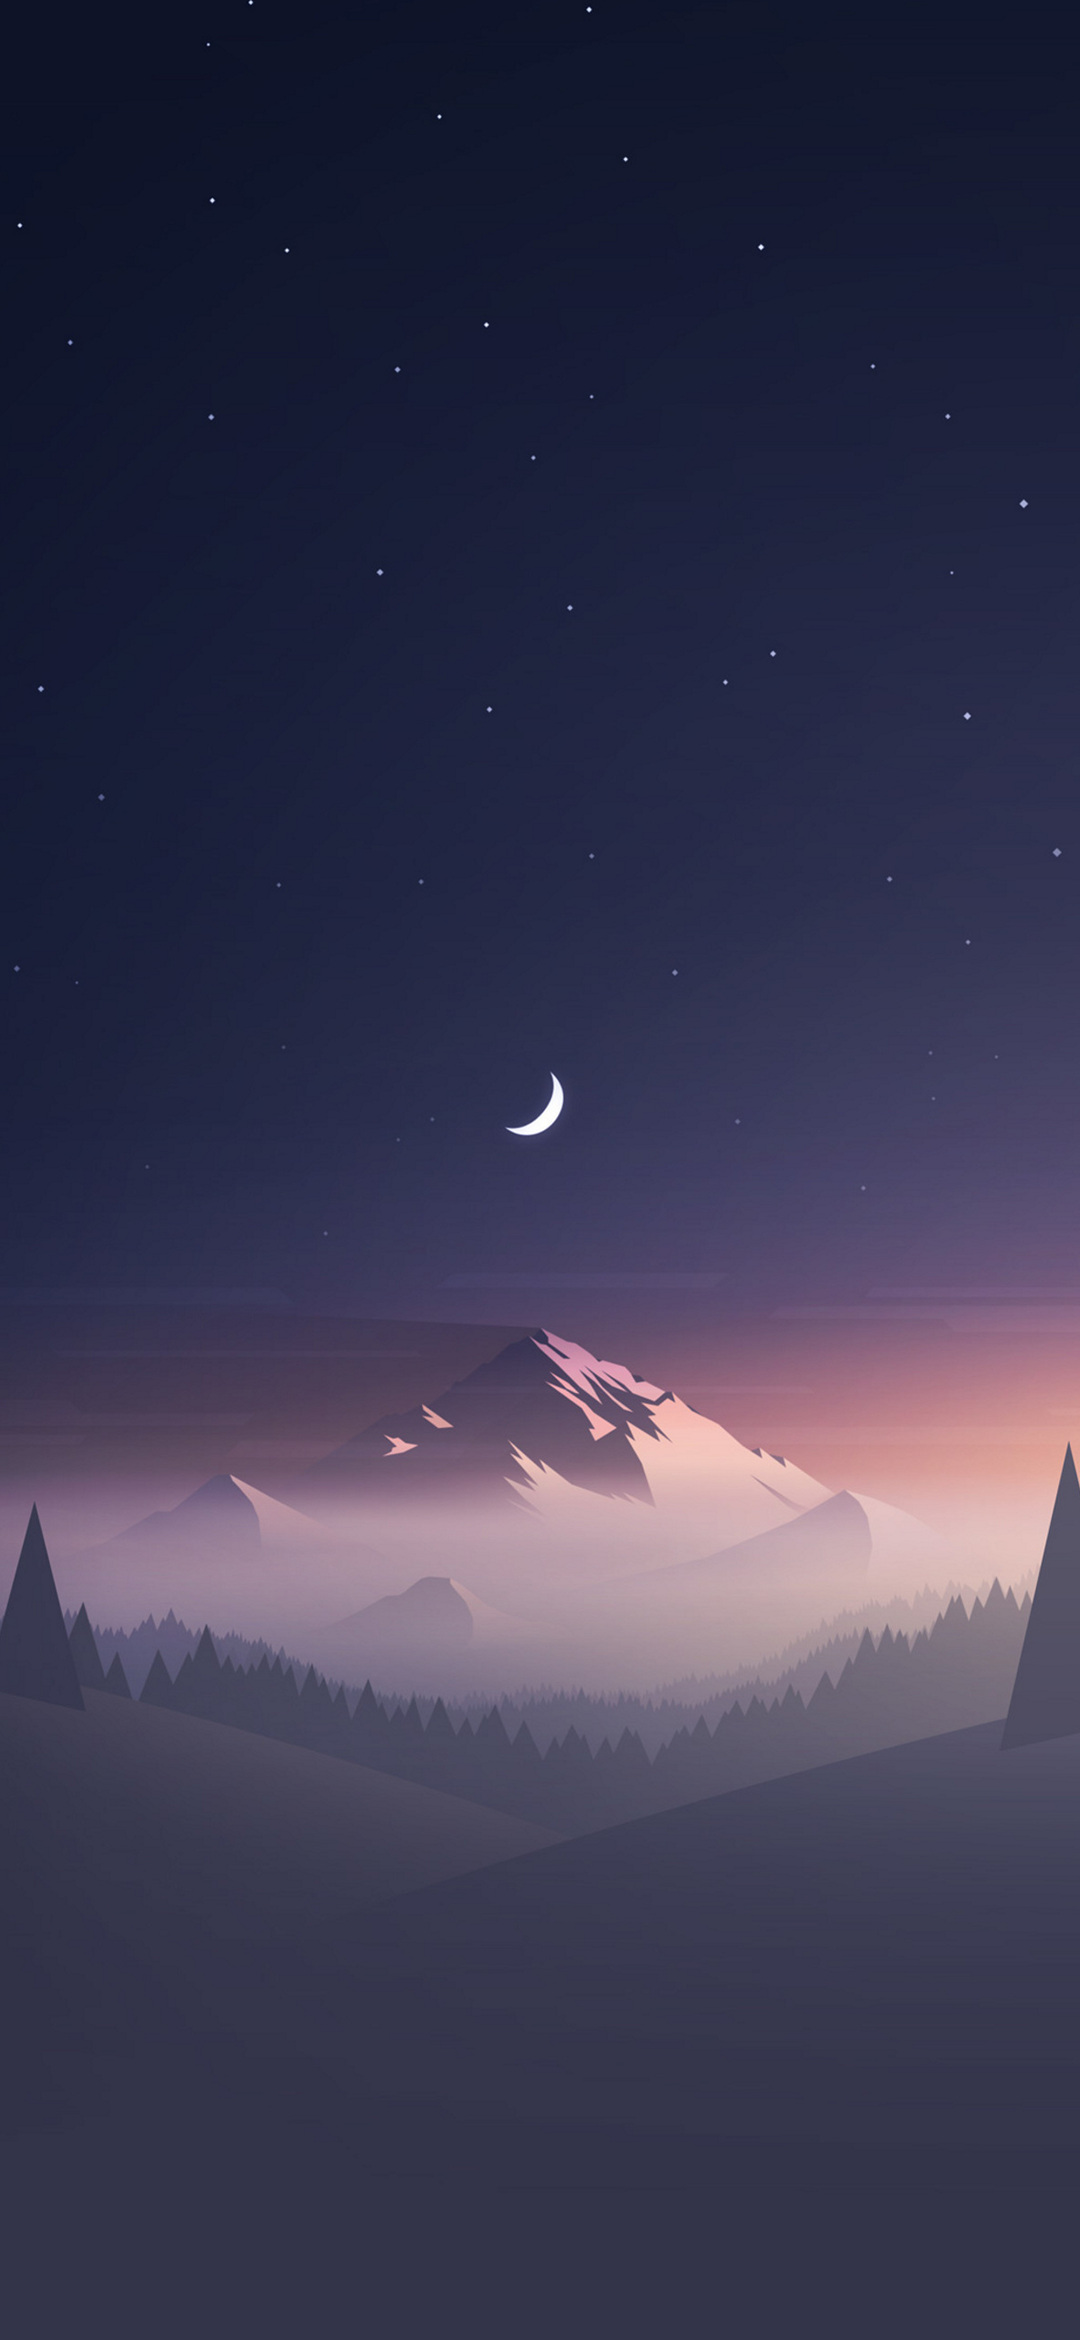 綺麗な星空と三日月と雪山のイラスト Google Pixel 5 Android 壁紙 待ち受け Sumaran